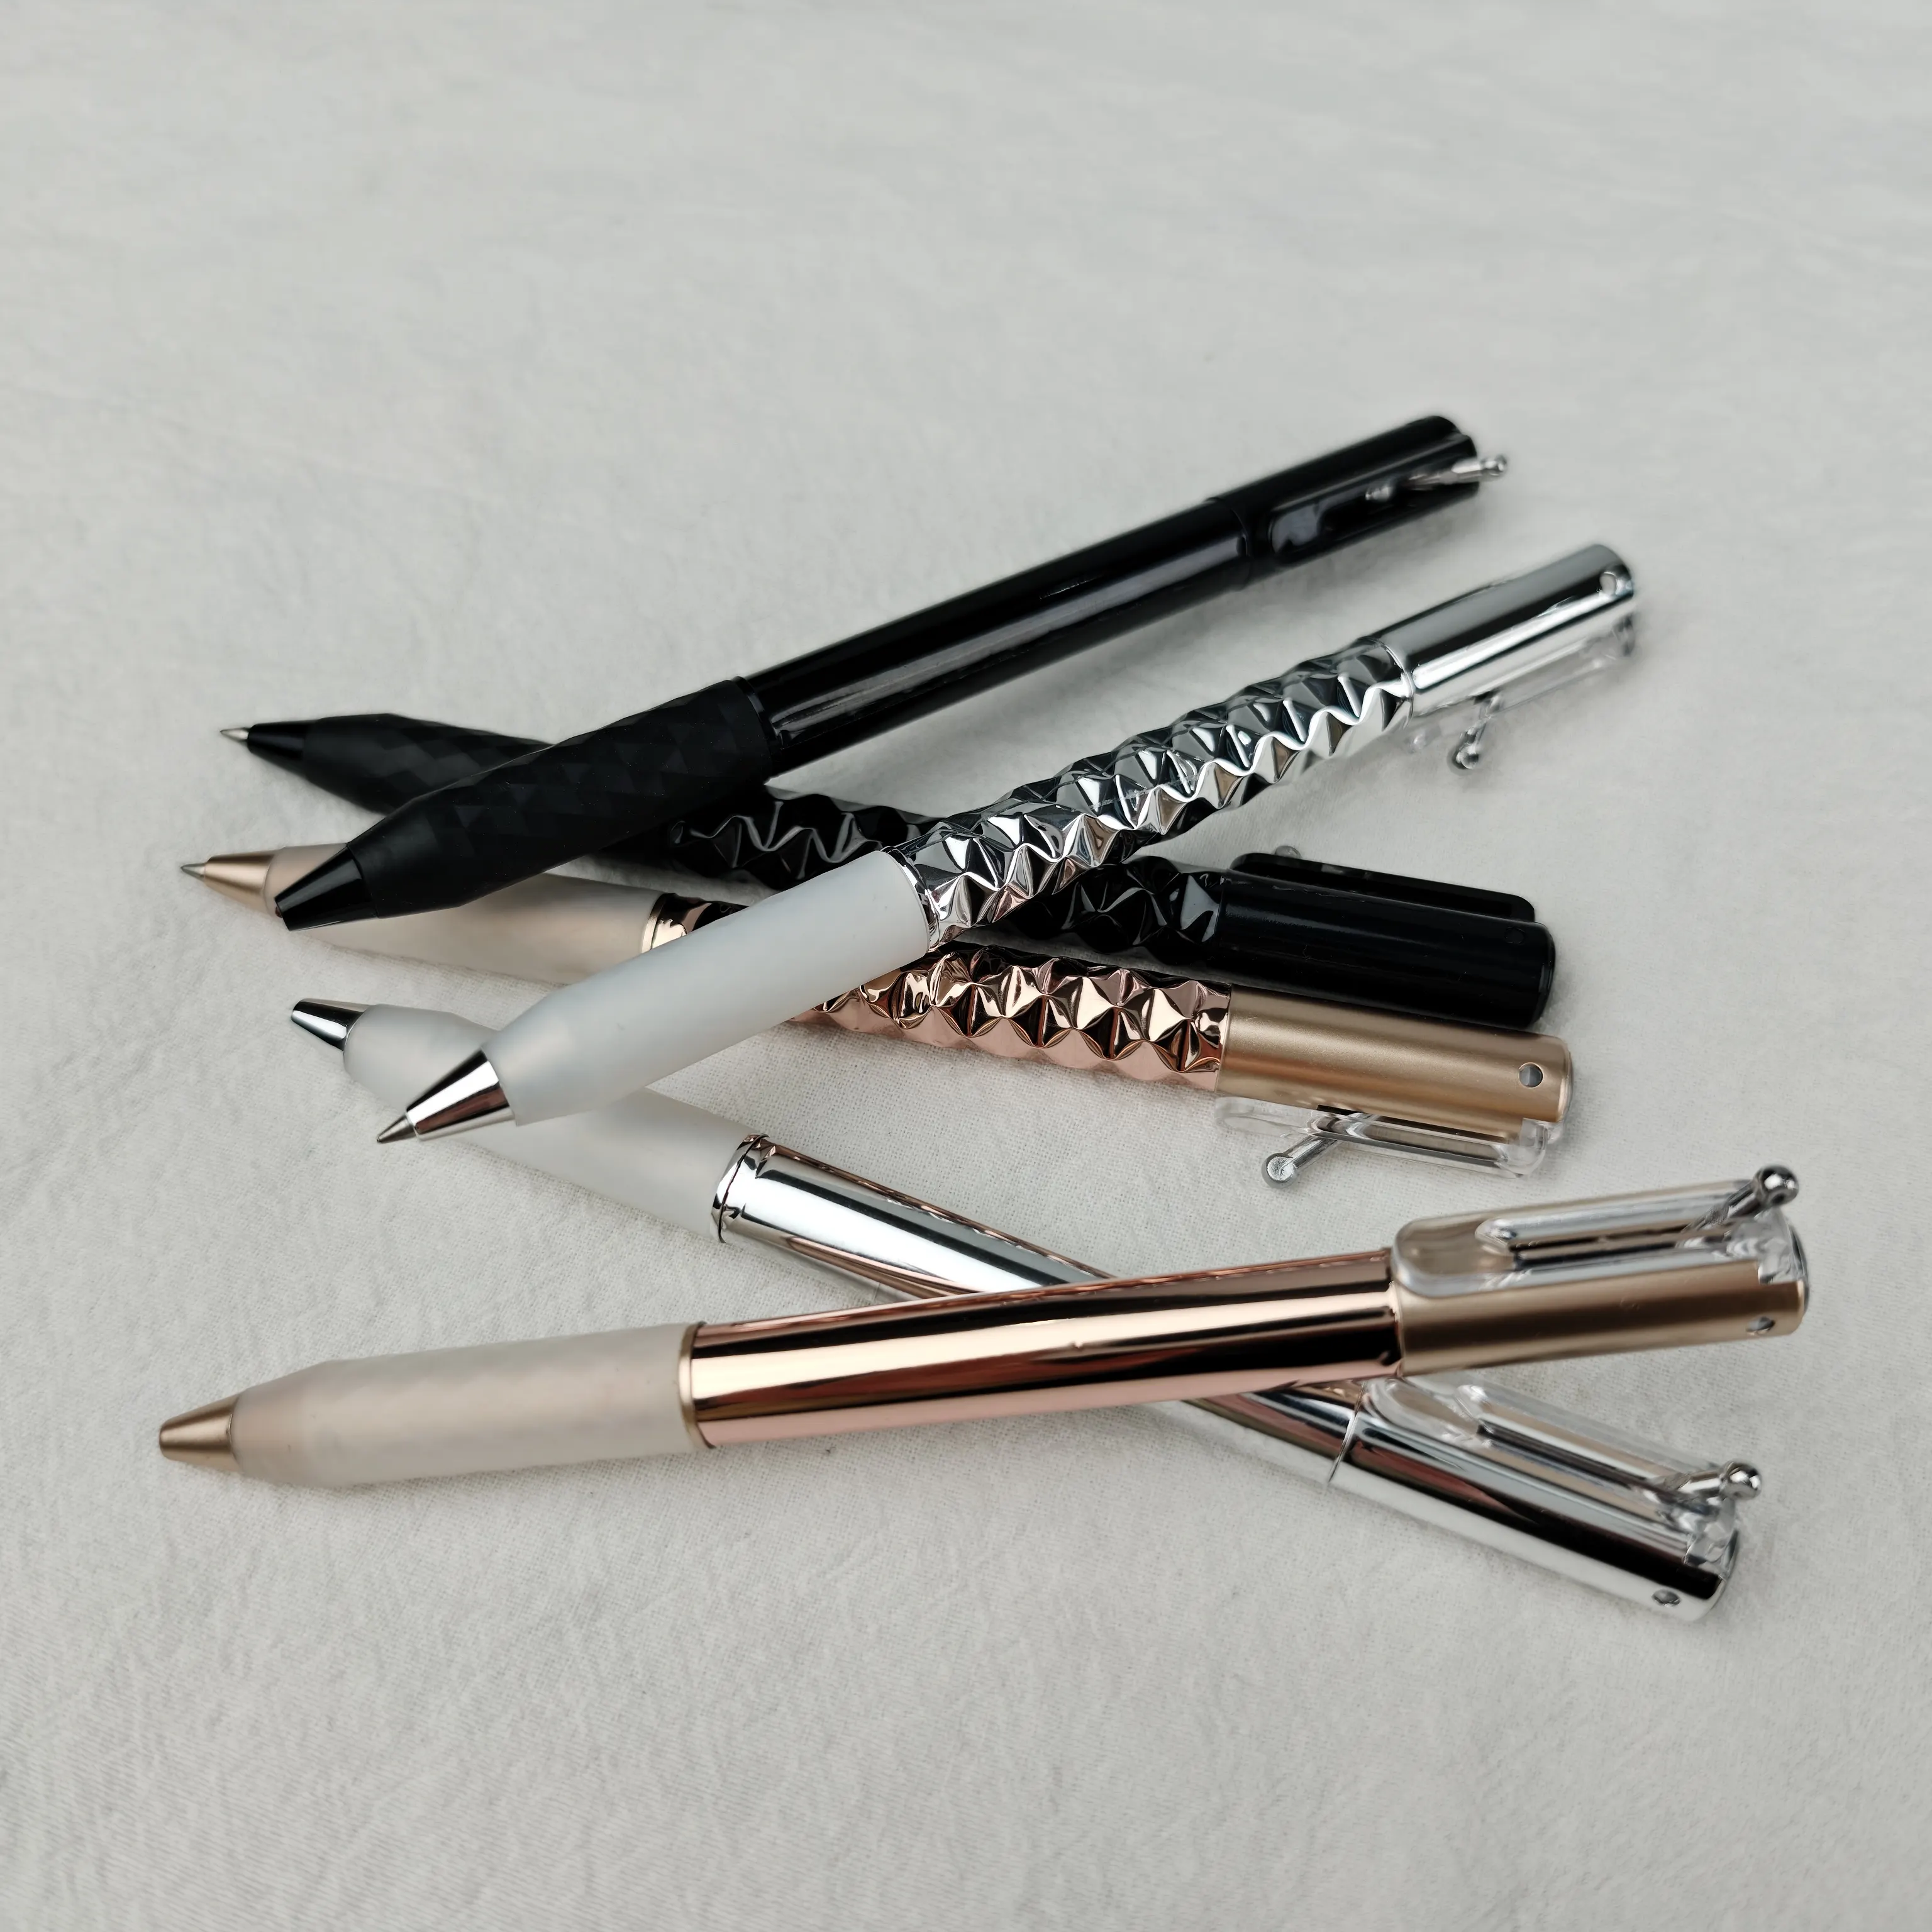 أقلام حبر جاف من البلاستيك من YF PEN قلم حبر جاف جديد مع علامة تجارية مخصصة للترويج